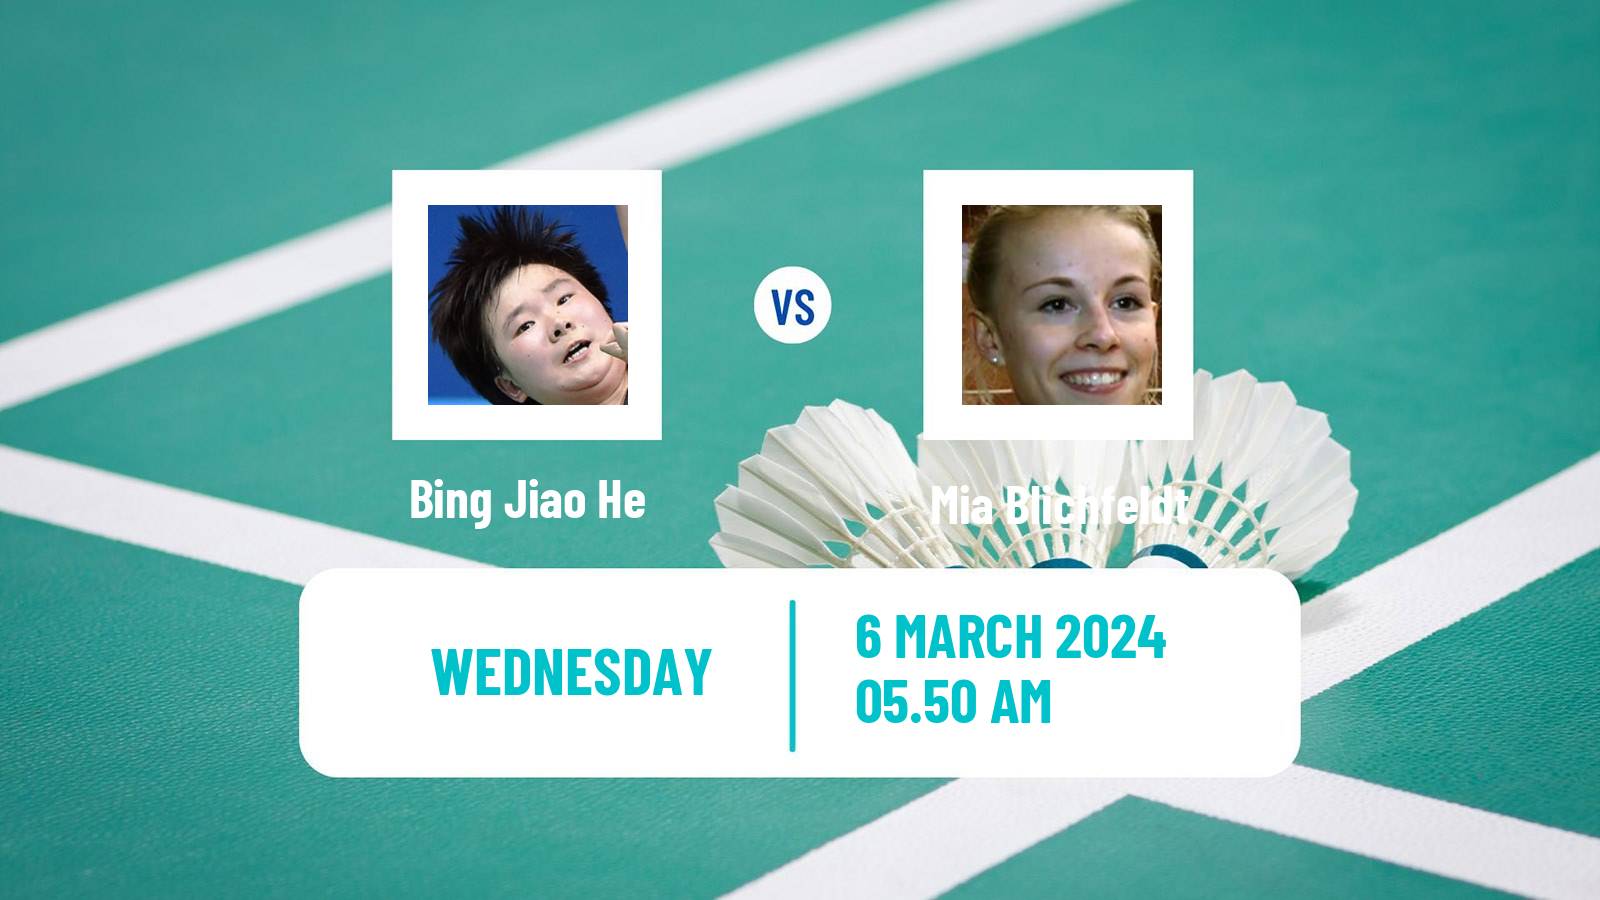 Badminton BWF World Tour French Open Women Bing Jiao He - Mia Blichfeldt